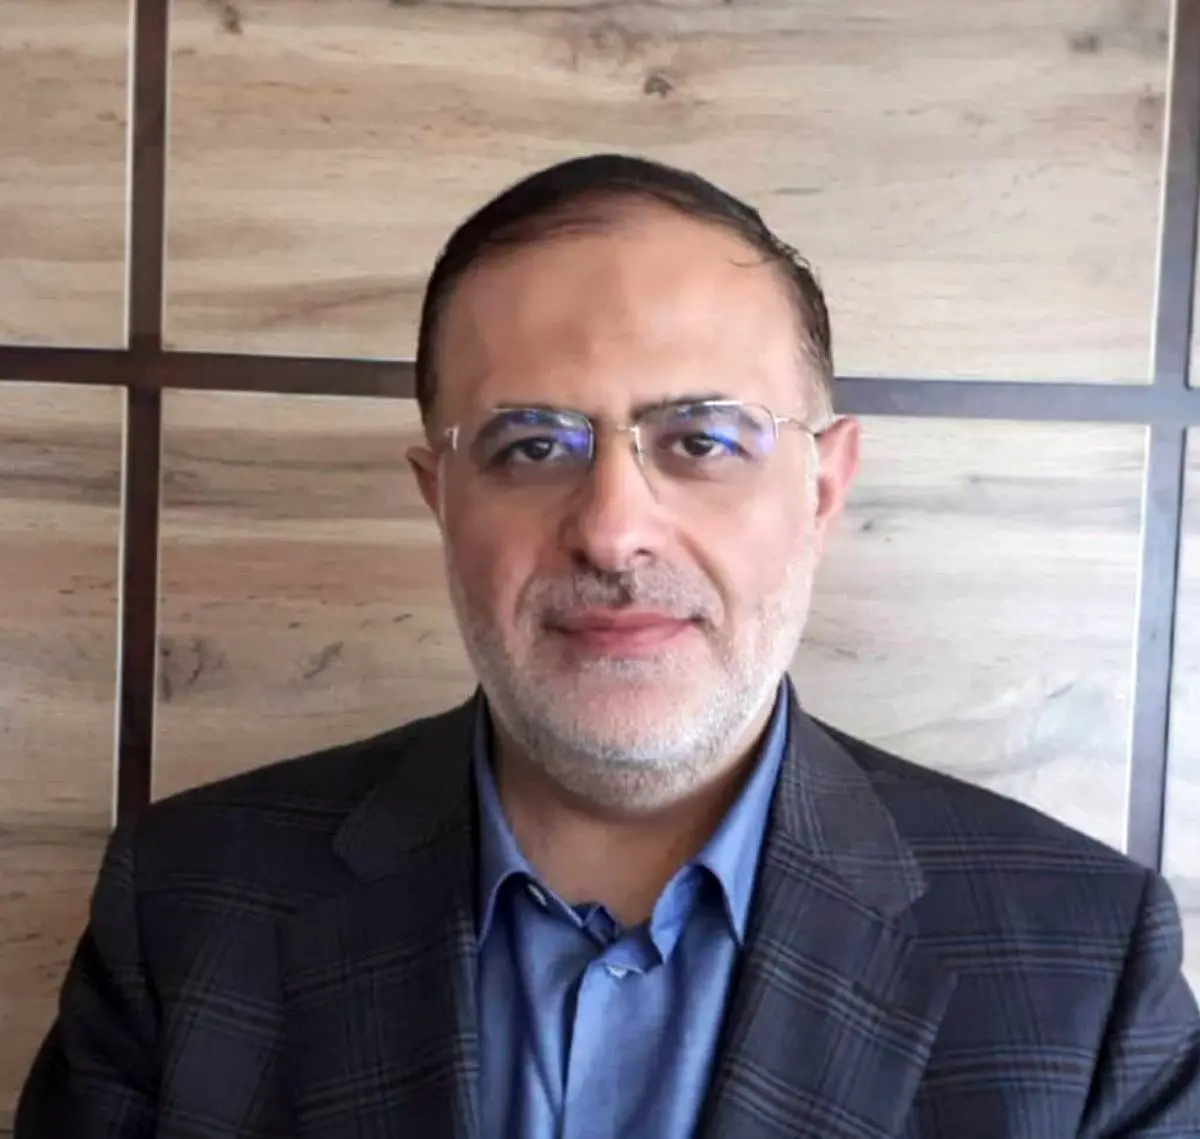 انتصاب محمد مهدی اعلایی به سمت عضو موظف هیات مدیره شرکت سهامی بیمه ایران
